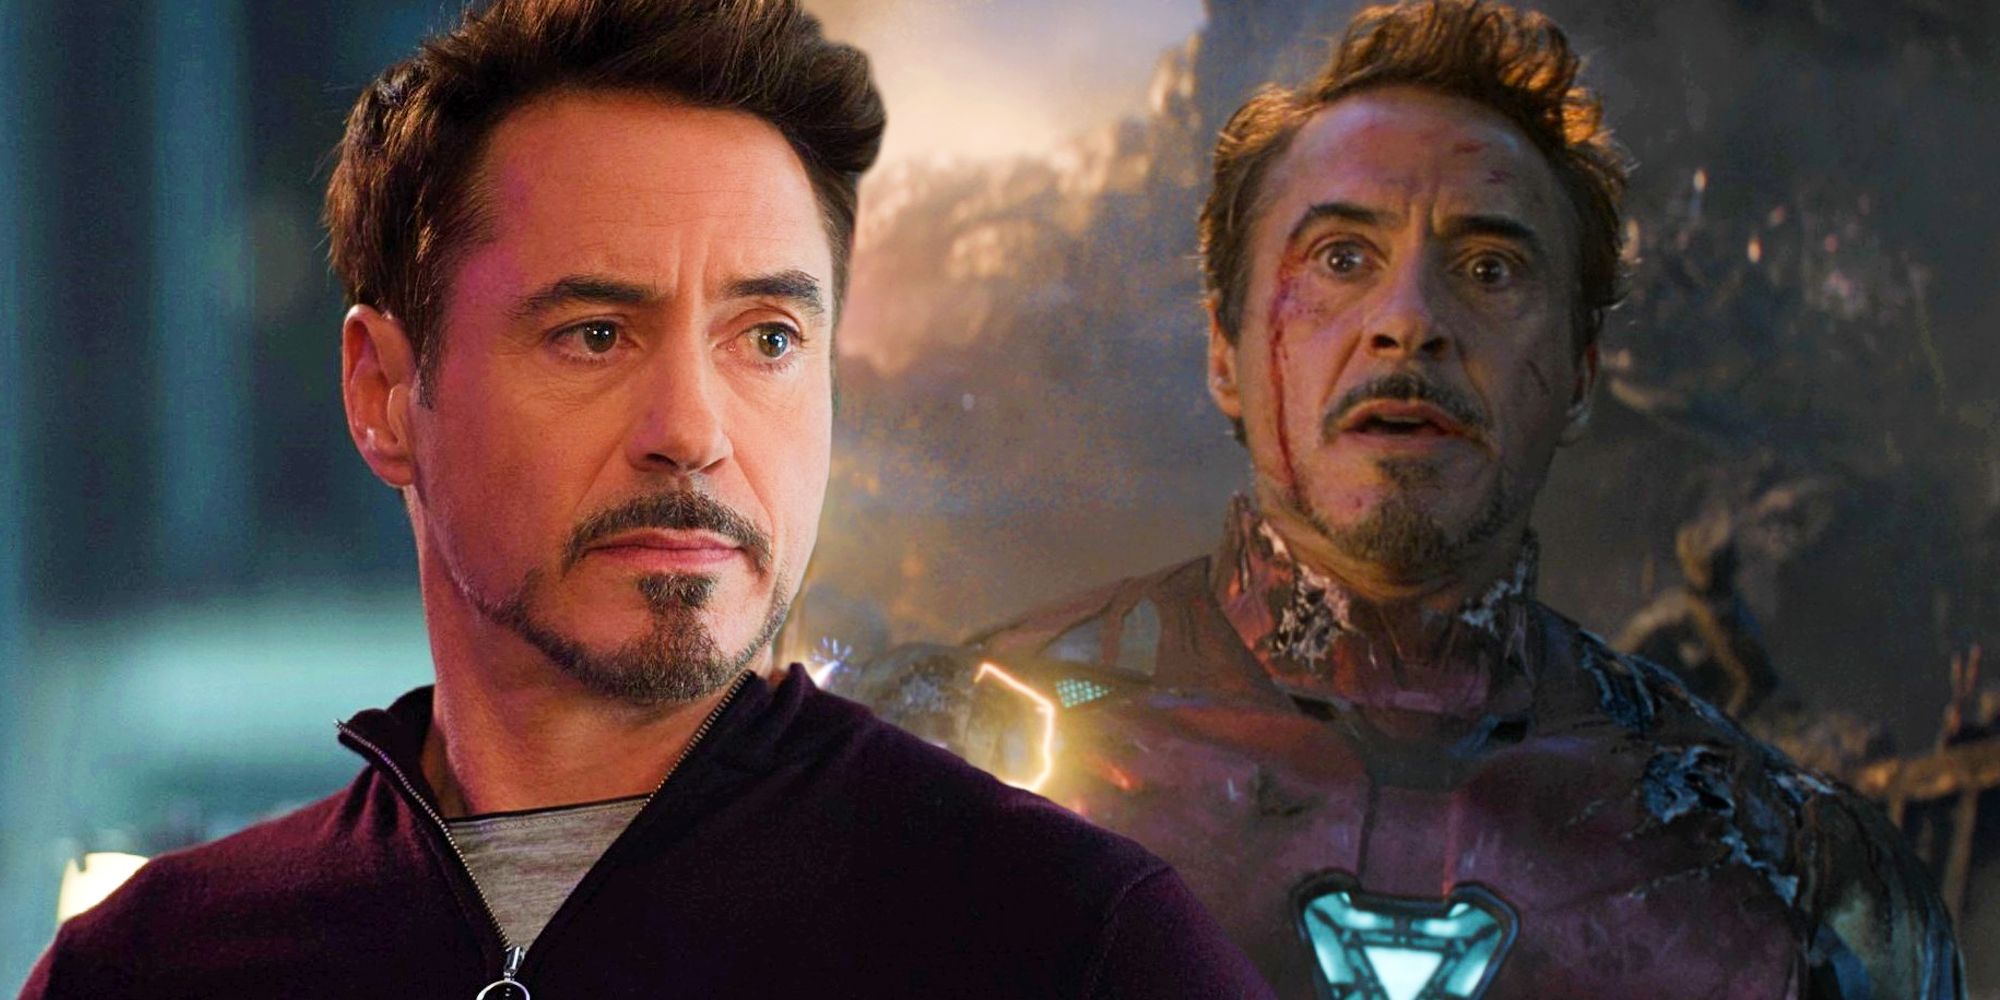 Robert Downey Jr as Iron Man in Endgame